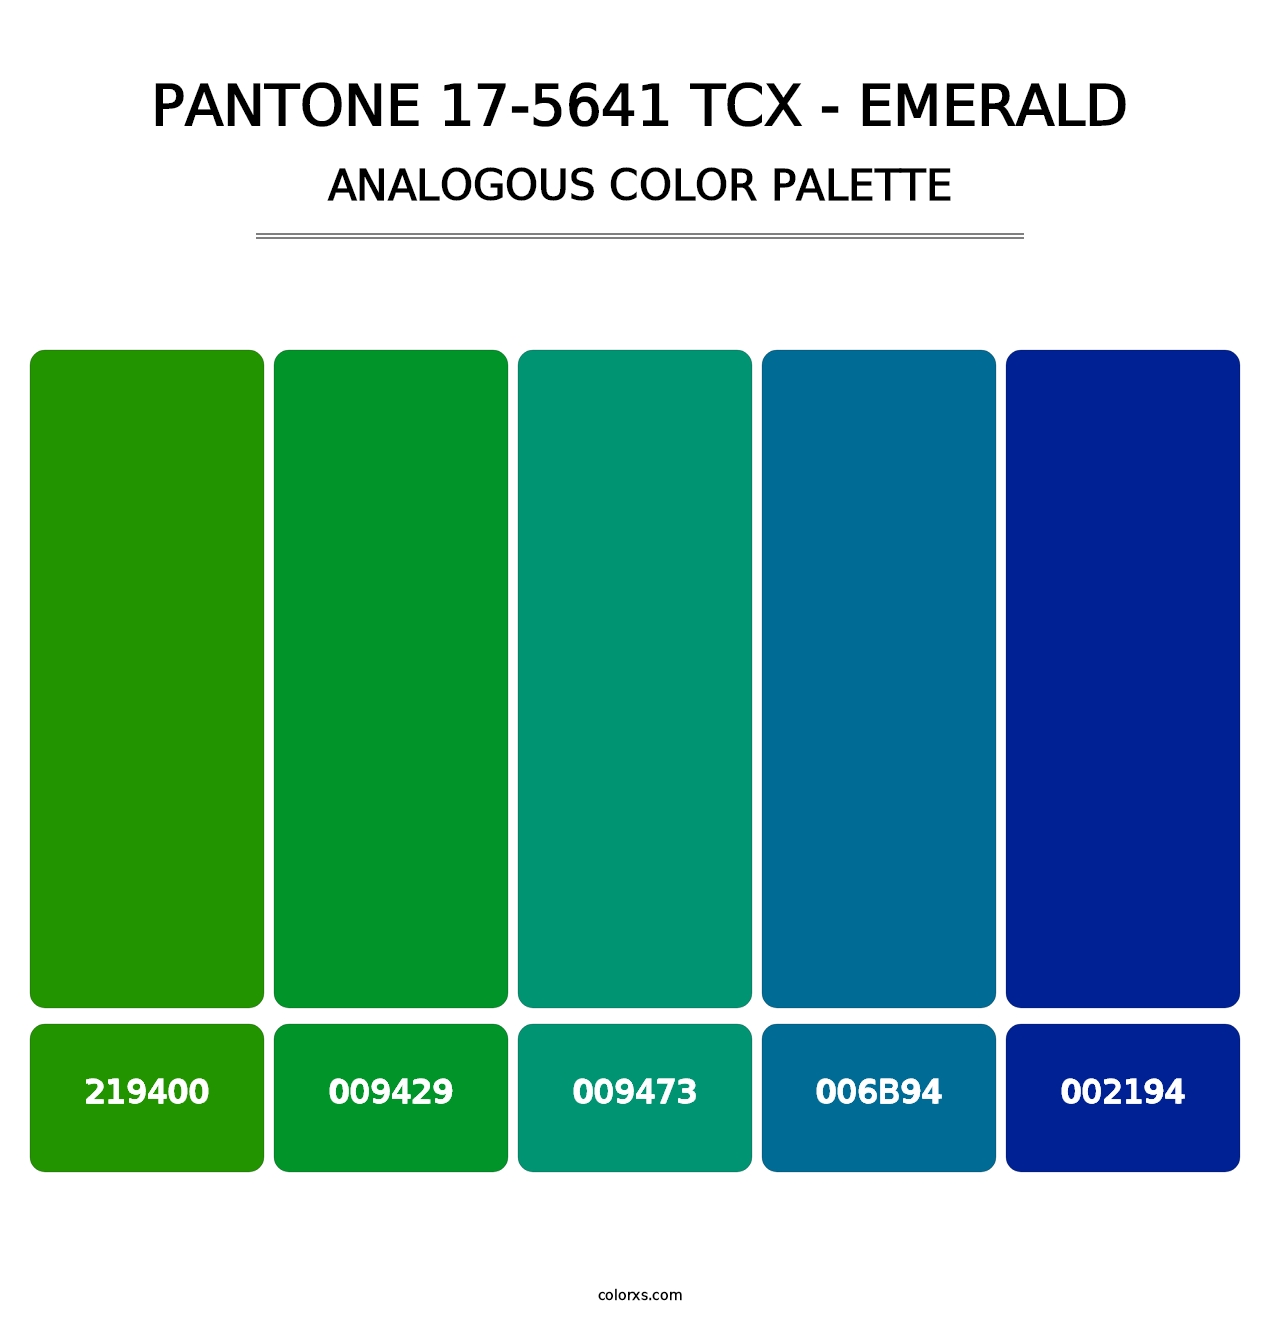 PANTONE 17-5641 TCX - Emerald - Analogous Color Palette